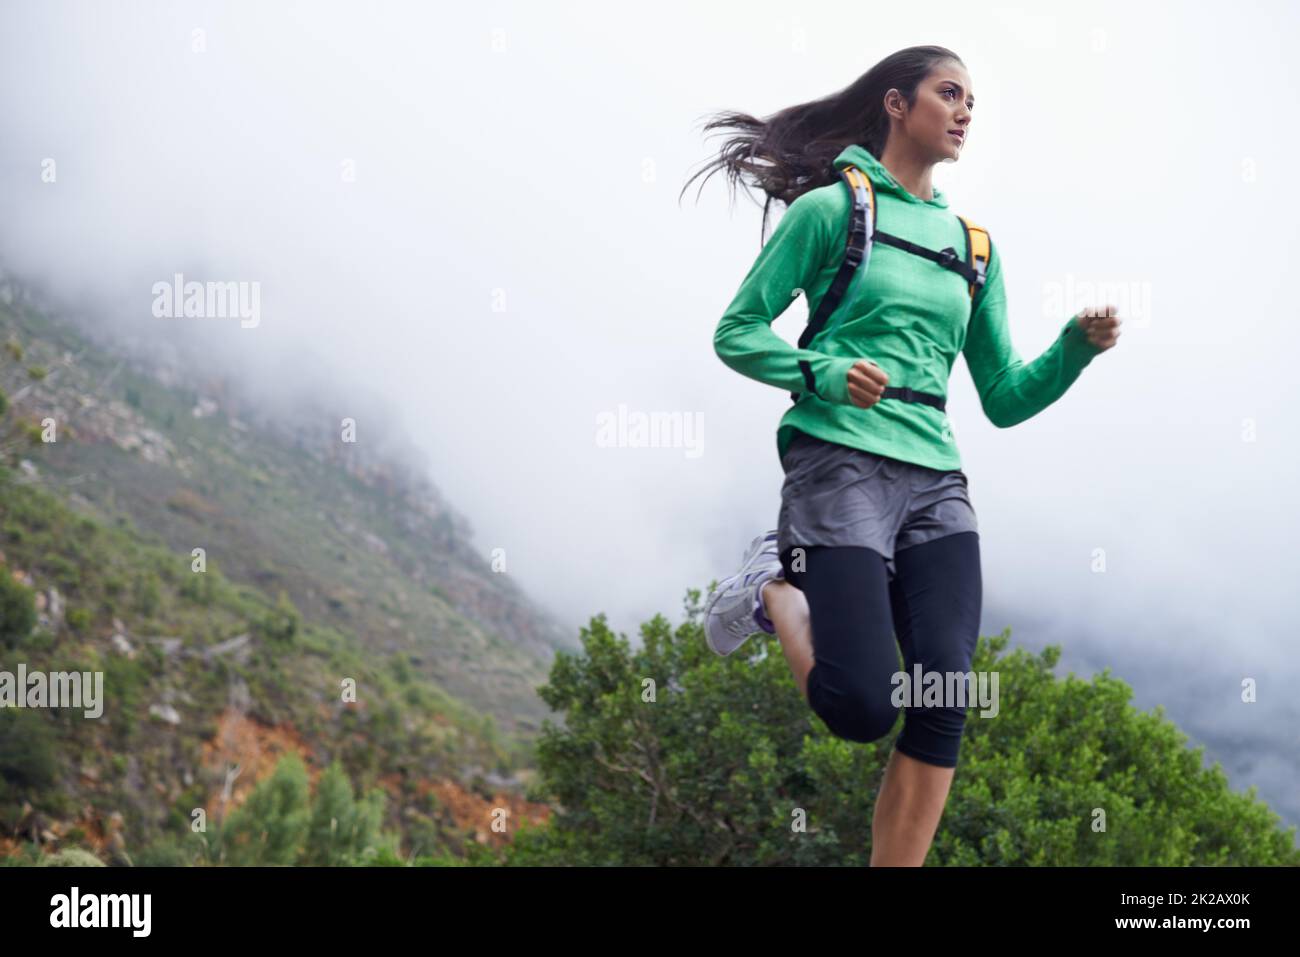 Sie schreitet jeden Tag in ihrer Fitness voran. Eine junge Frau sprintet an einem frischen Morgen entlang einer Bergstraße. Stockfoto